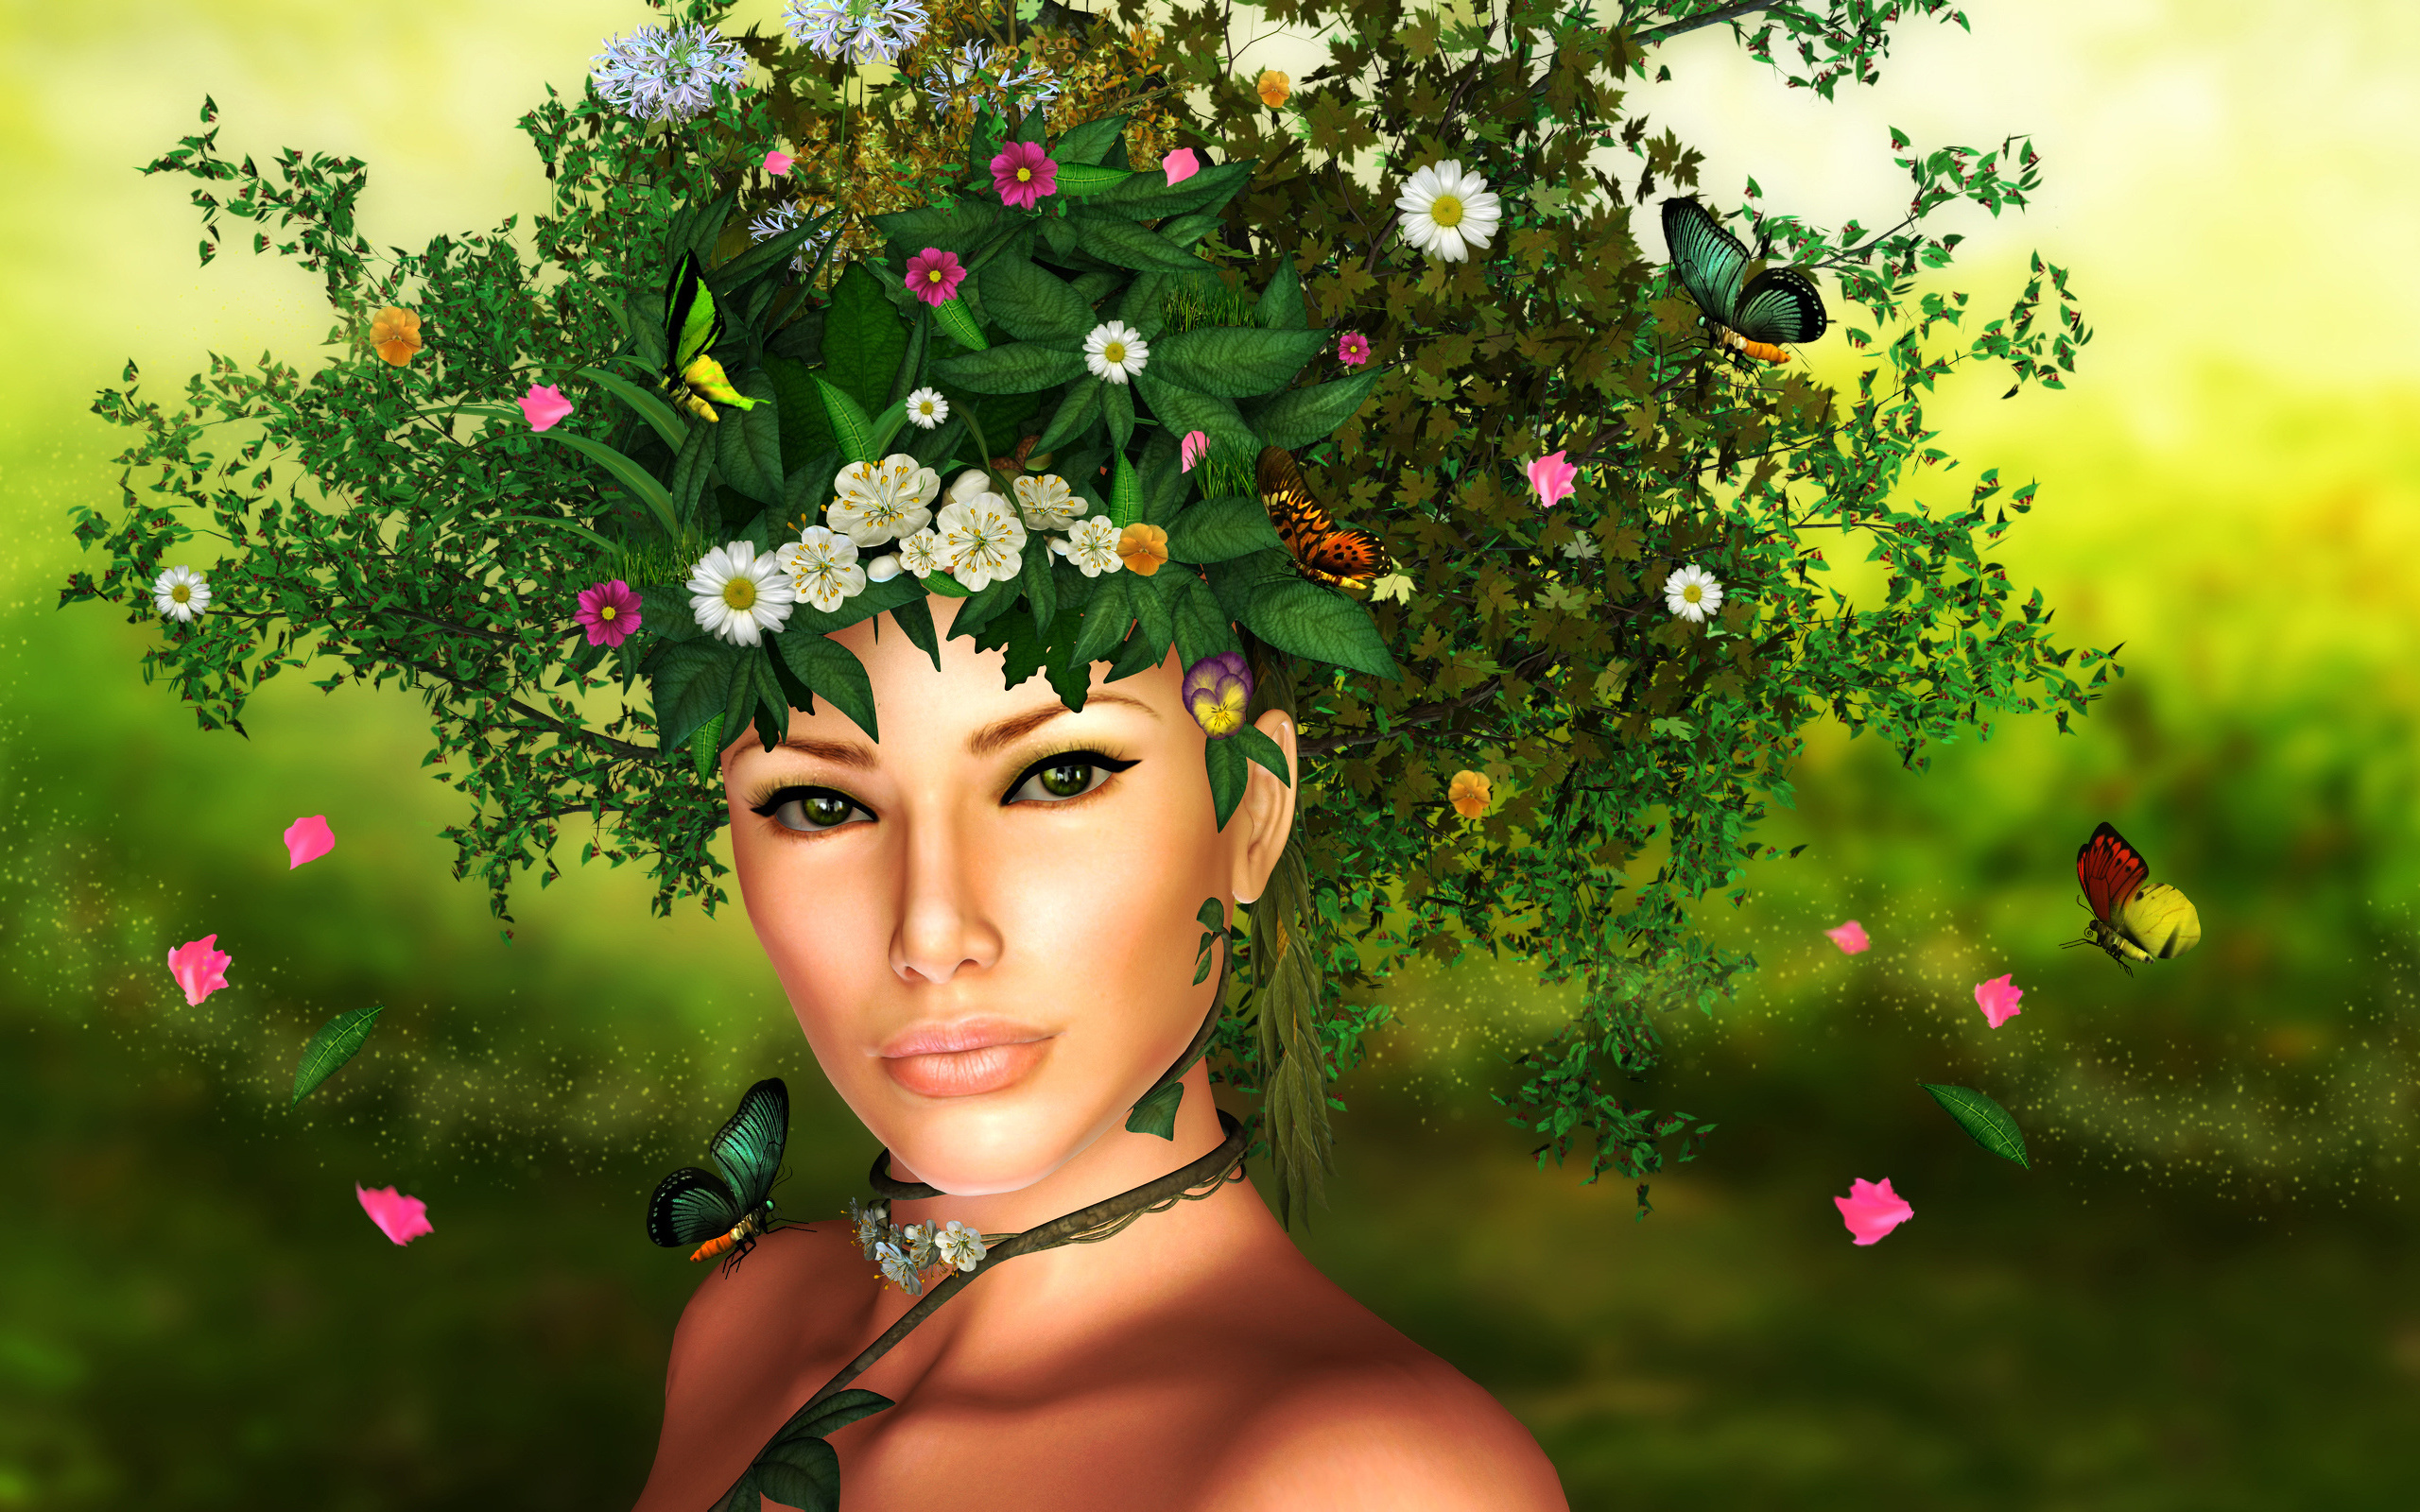 Фото на аватарку для женщины природа весна